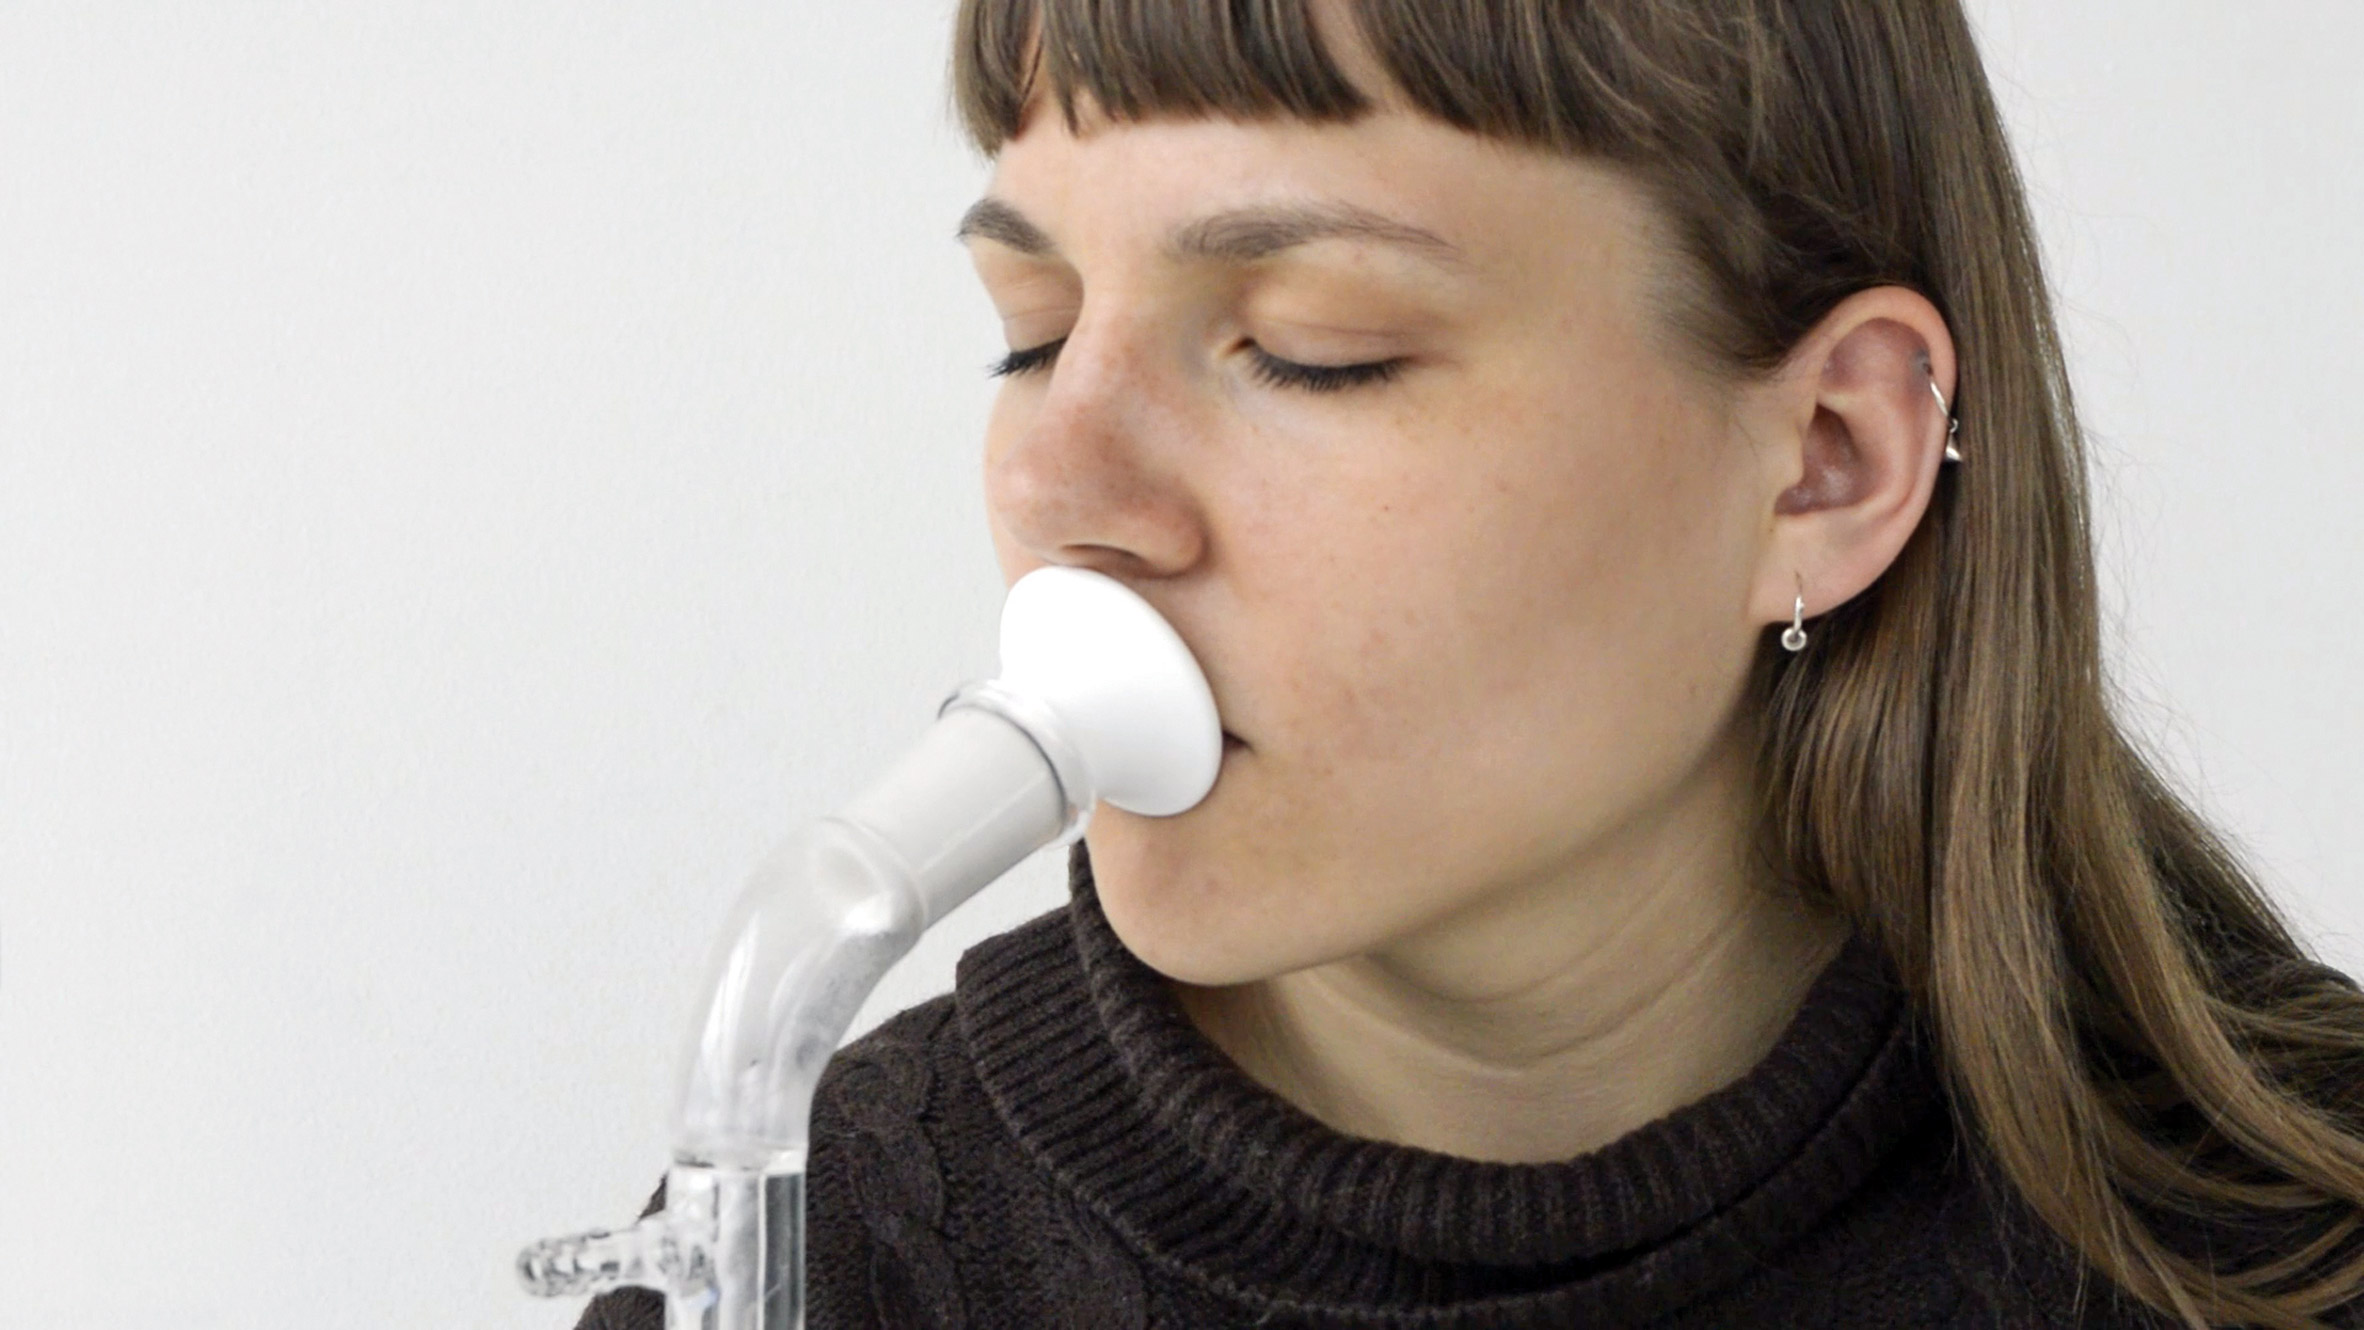 Breathing device in Human-Cloud Project by Filips Staņislavskis